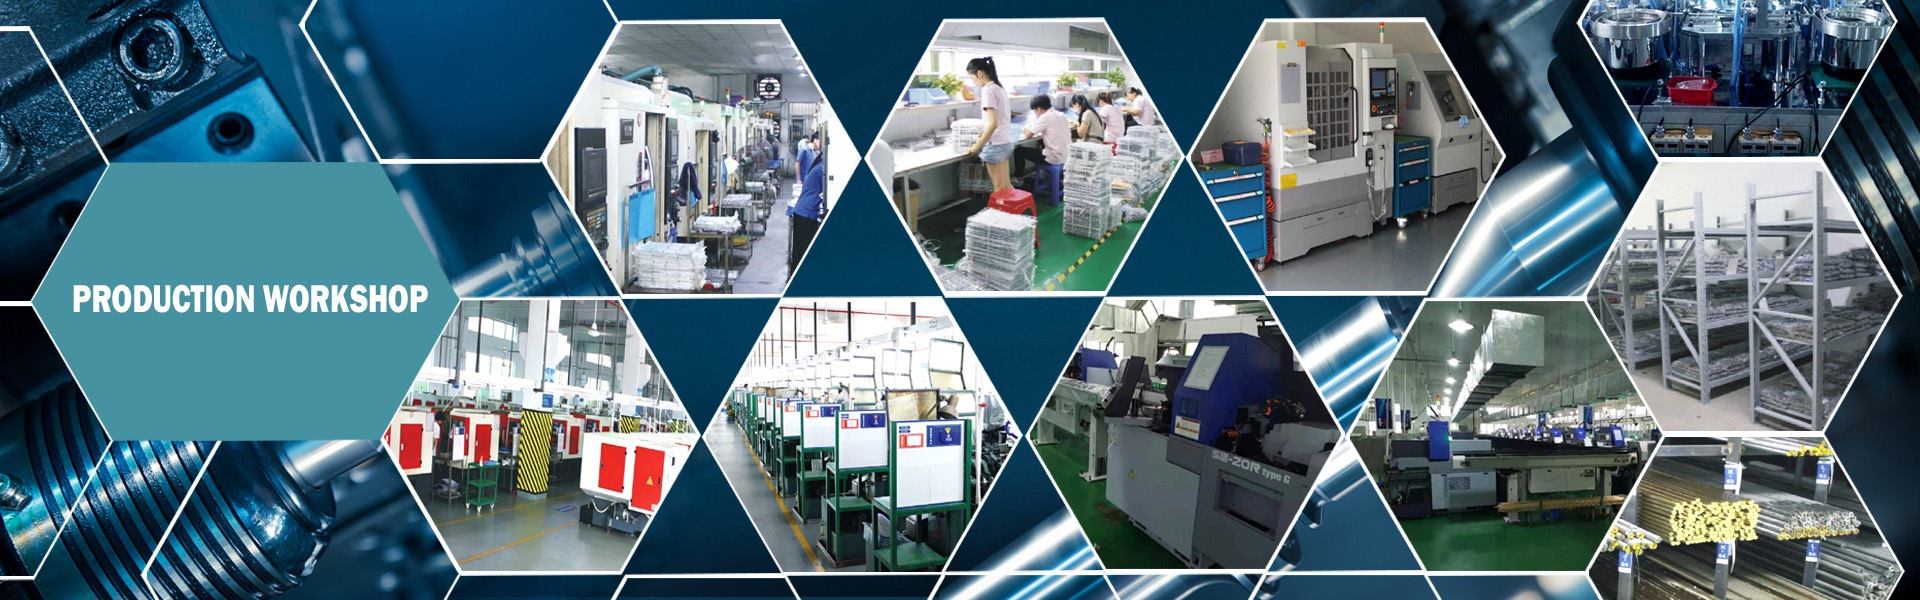 ความแม่นยำฮาร์ดแวร์โลหะผสมหล่อตายโปรไฟล์ขึ้นรูป,Dongguan Xililai Precision Hardware Co.,Ltd.